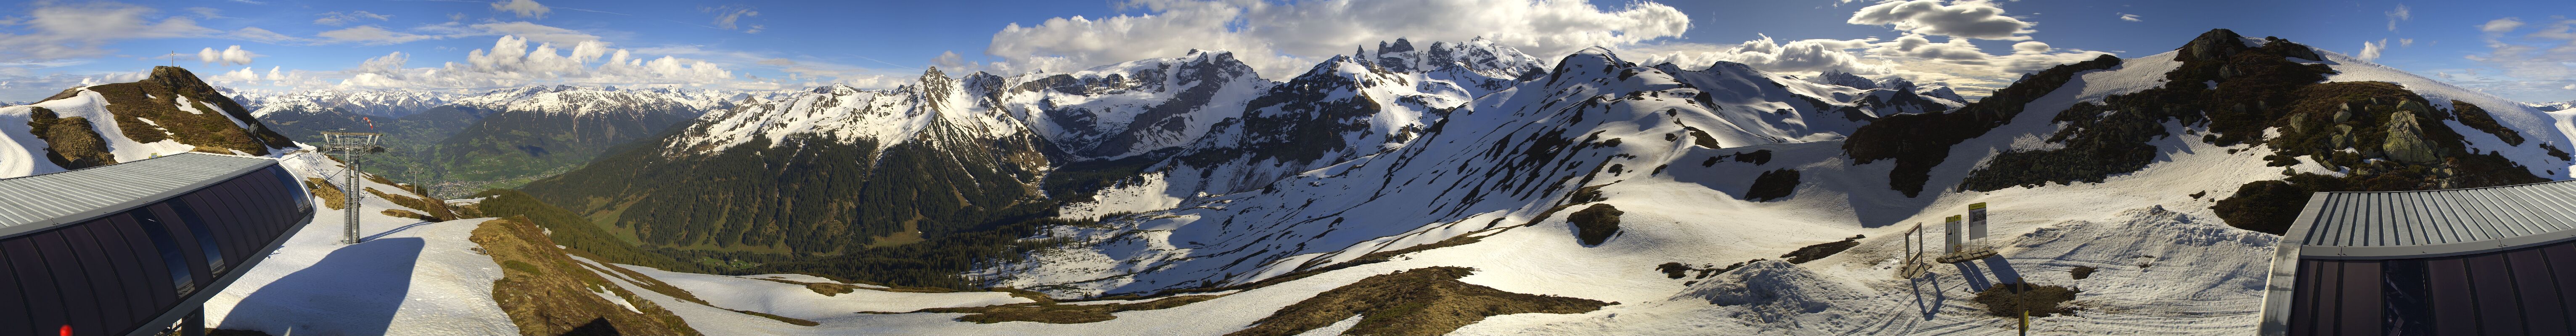 Bergstation der Rätikon Bergbahn mit 360° HDR Webcam, Rundblick ins Ski- und Wandergebiet, hinter der Bergstation der Skitunnel zur Aussergolmbahn mit der Diaboloabfahrt, der steilsten Abfahrt in Vorarlberg